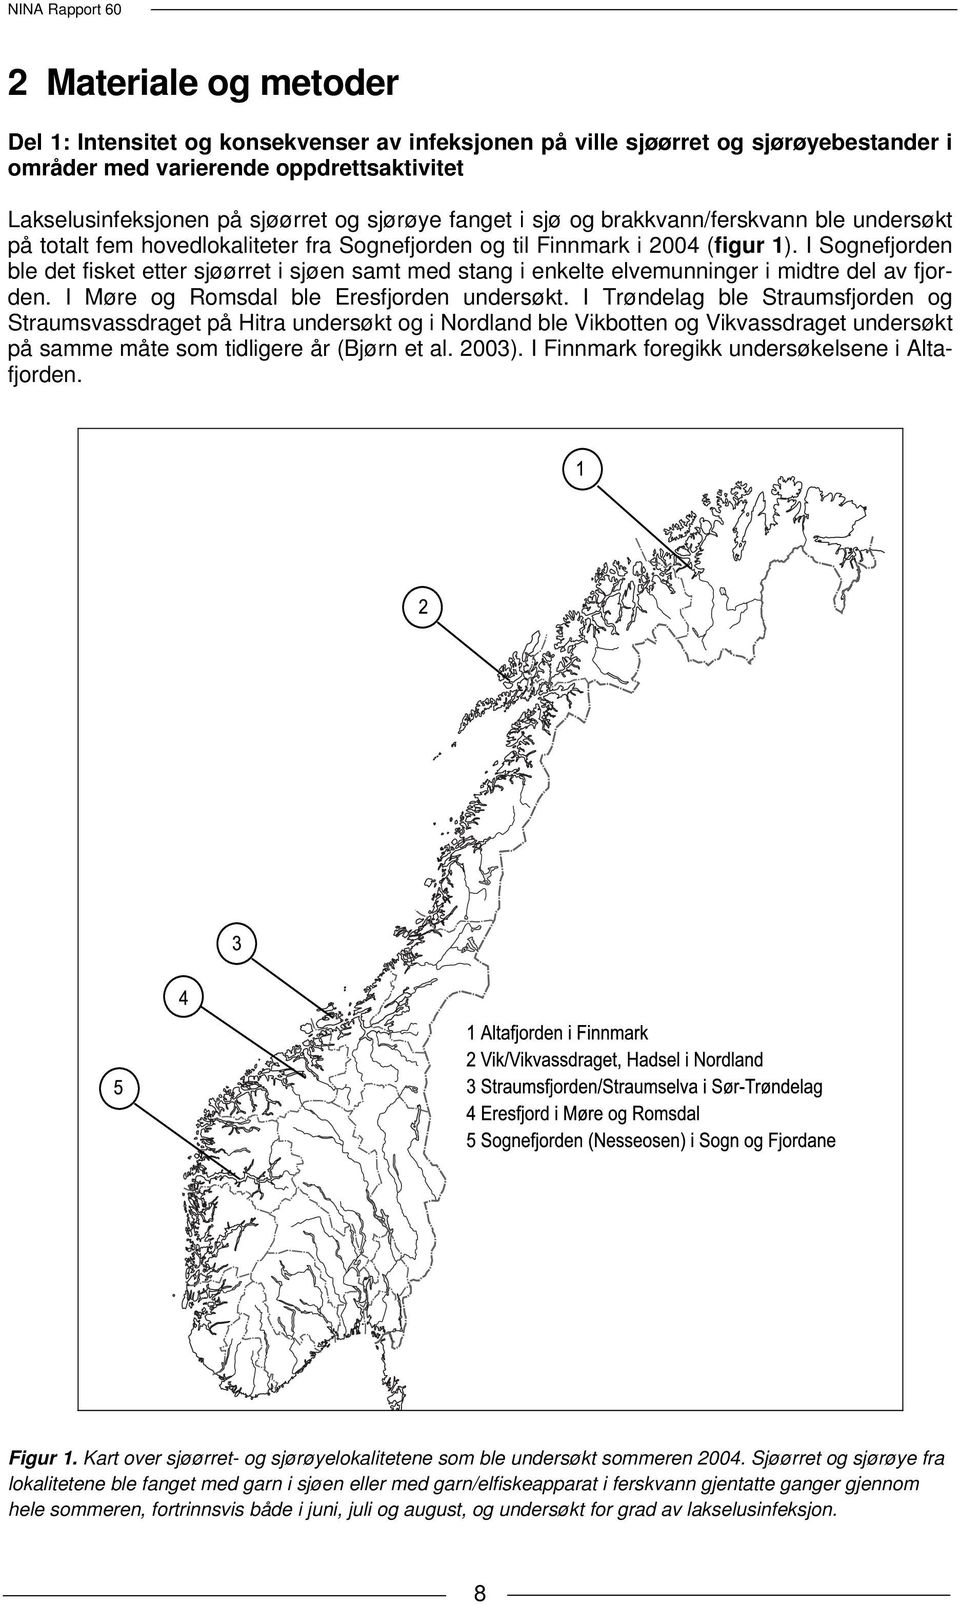 I Sognefjorden ble det fisket etter sjøørret i sjøen samt med stang i enkelte elvemunninger i midtre del av fjorden. I Møre og Romsdal ble Eresfjorden undersøkt.